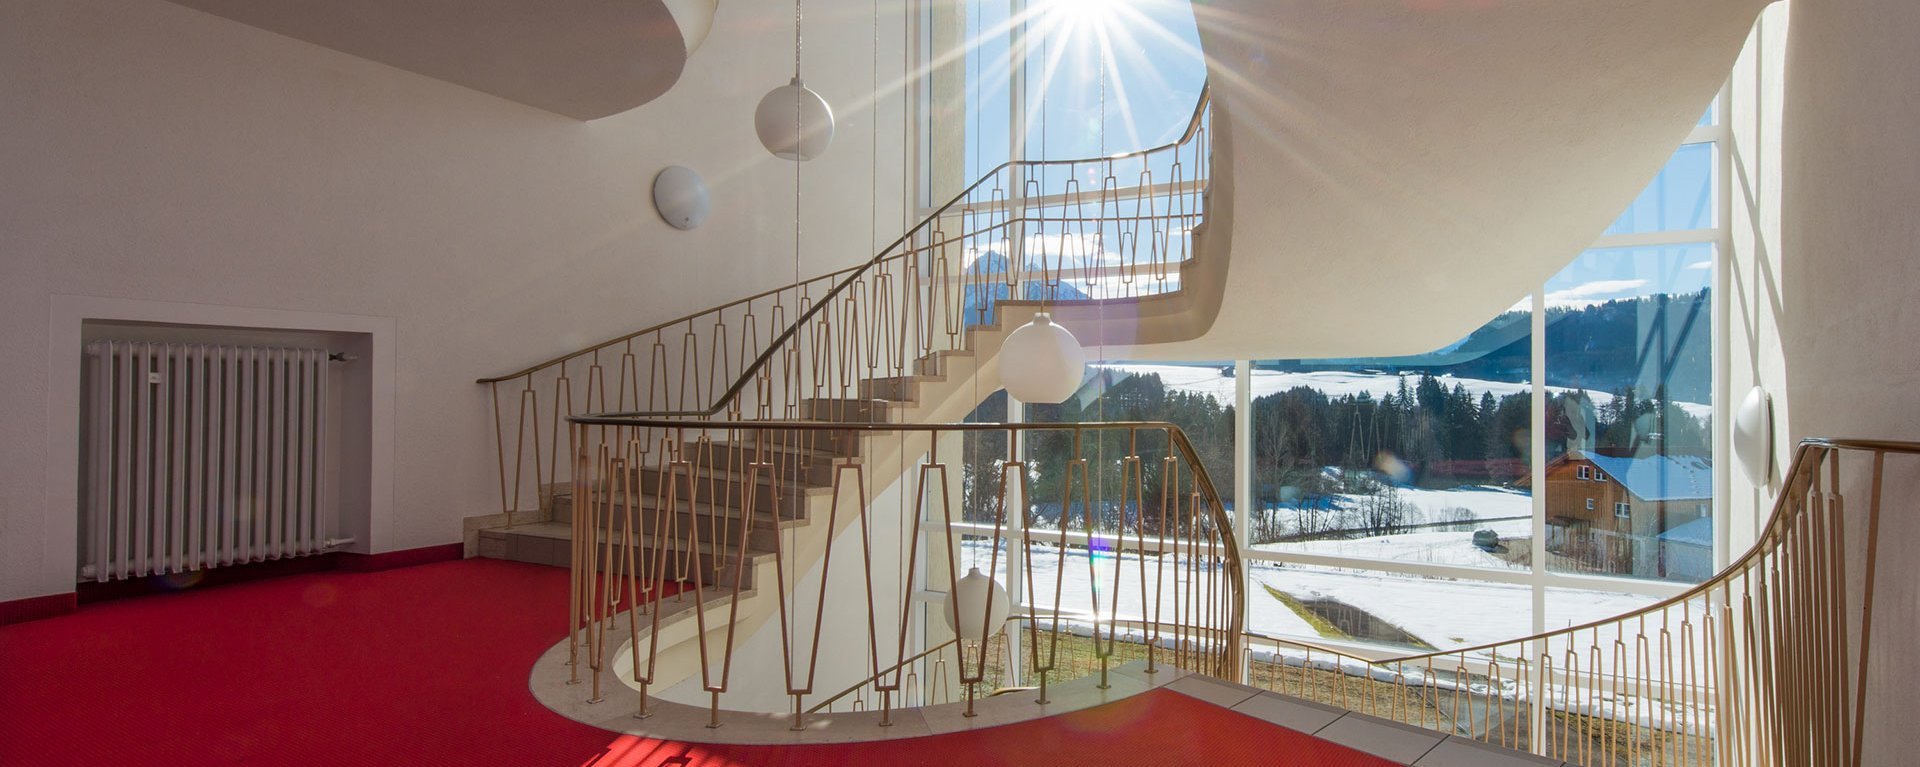 Treppenhaus der Suchtklinik - die Winterlandschaft bei Sonnenschein durch große Fenster gesehen